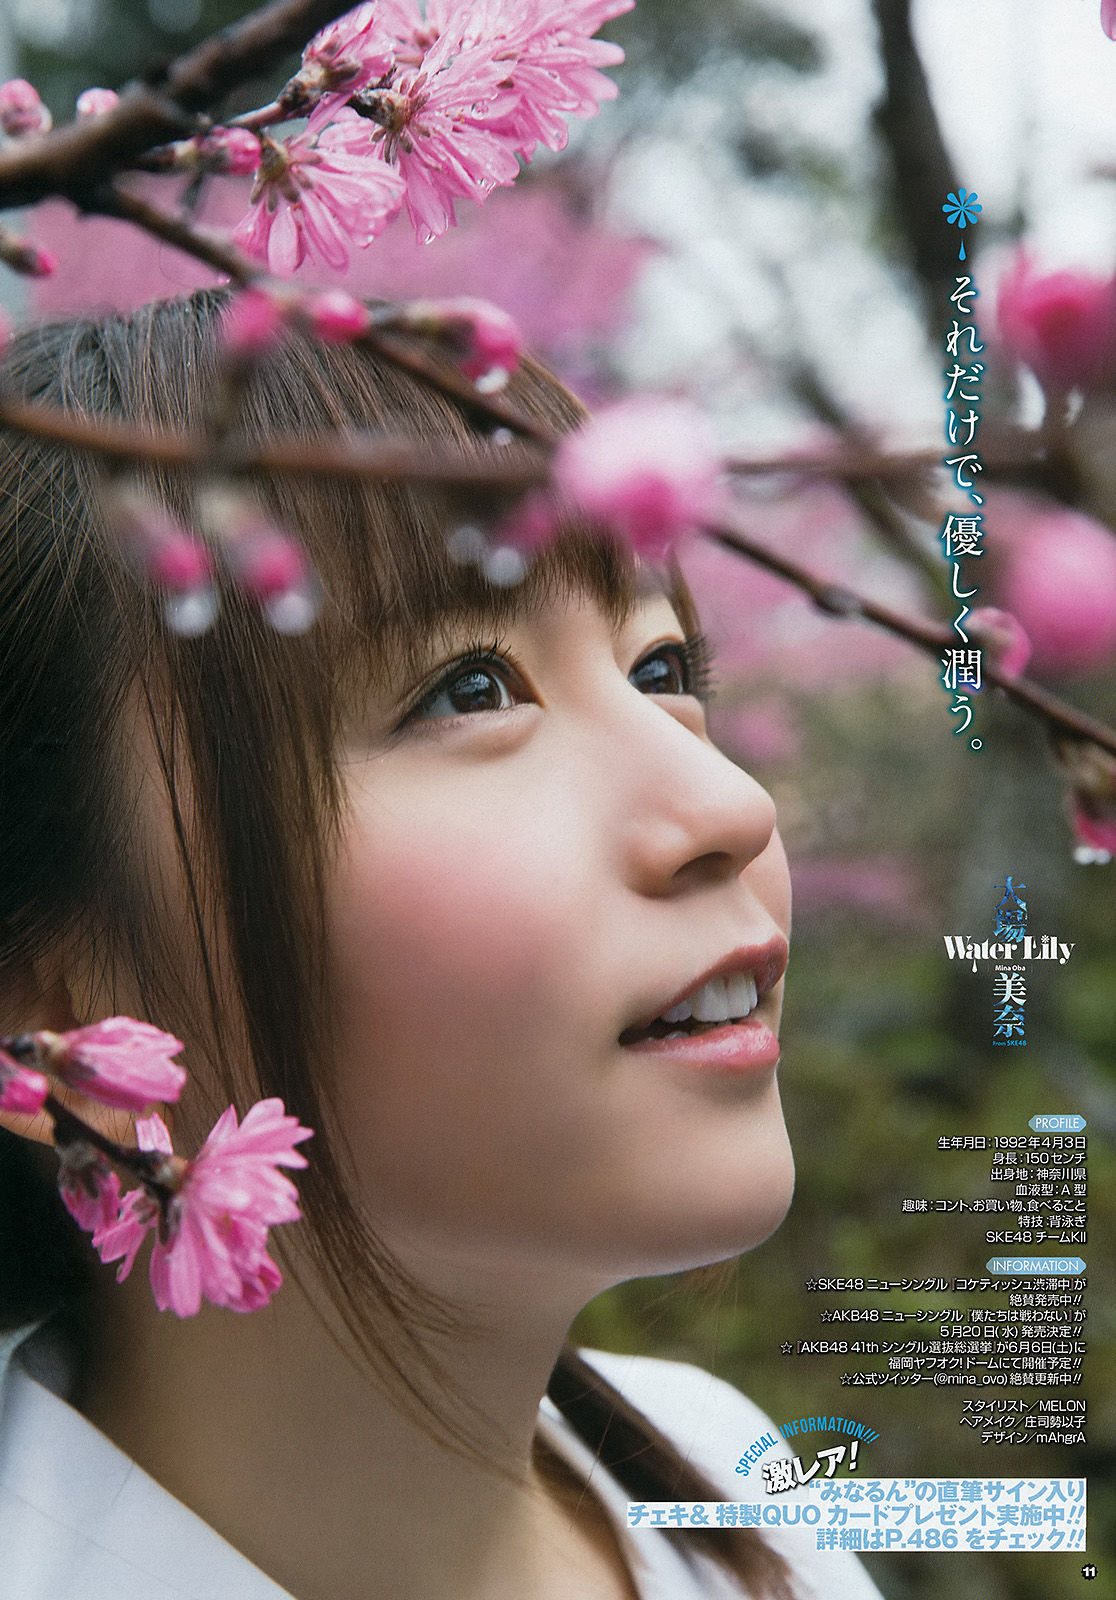 [Young Gangan] Mina Oba You Kikkawa Hitomi Yasueda 2015 No.10 Photograph Page 15 No.9d0024